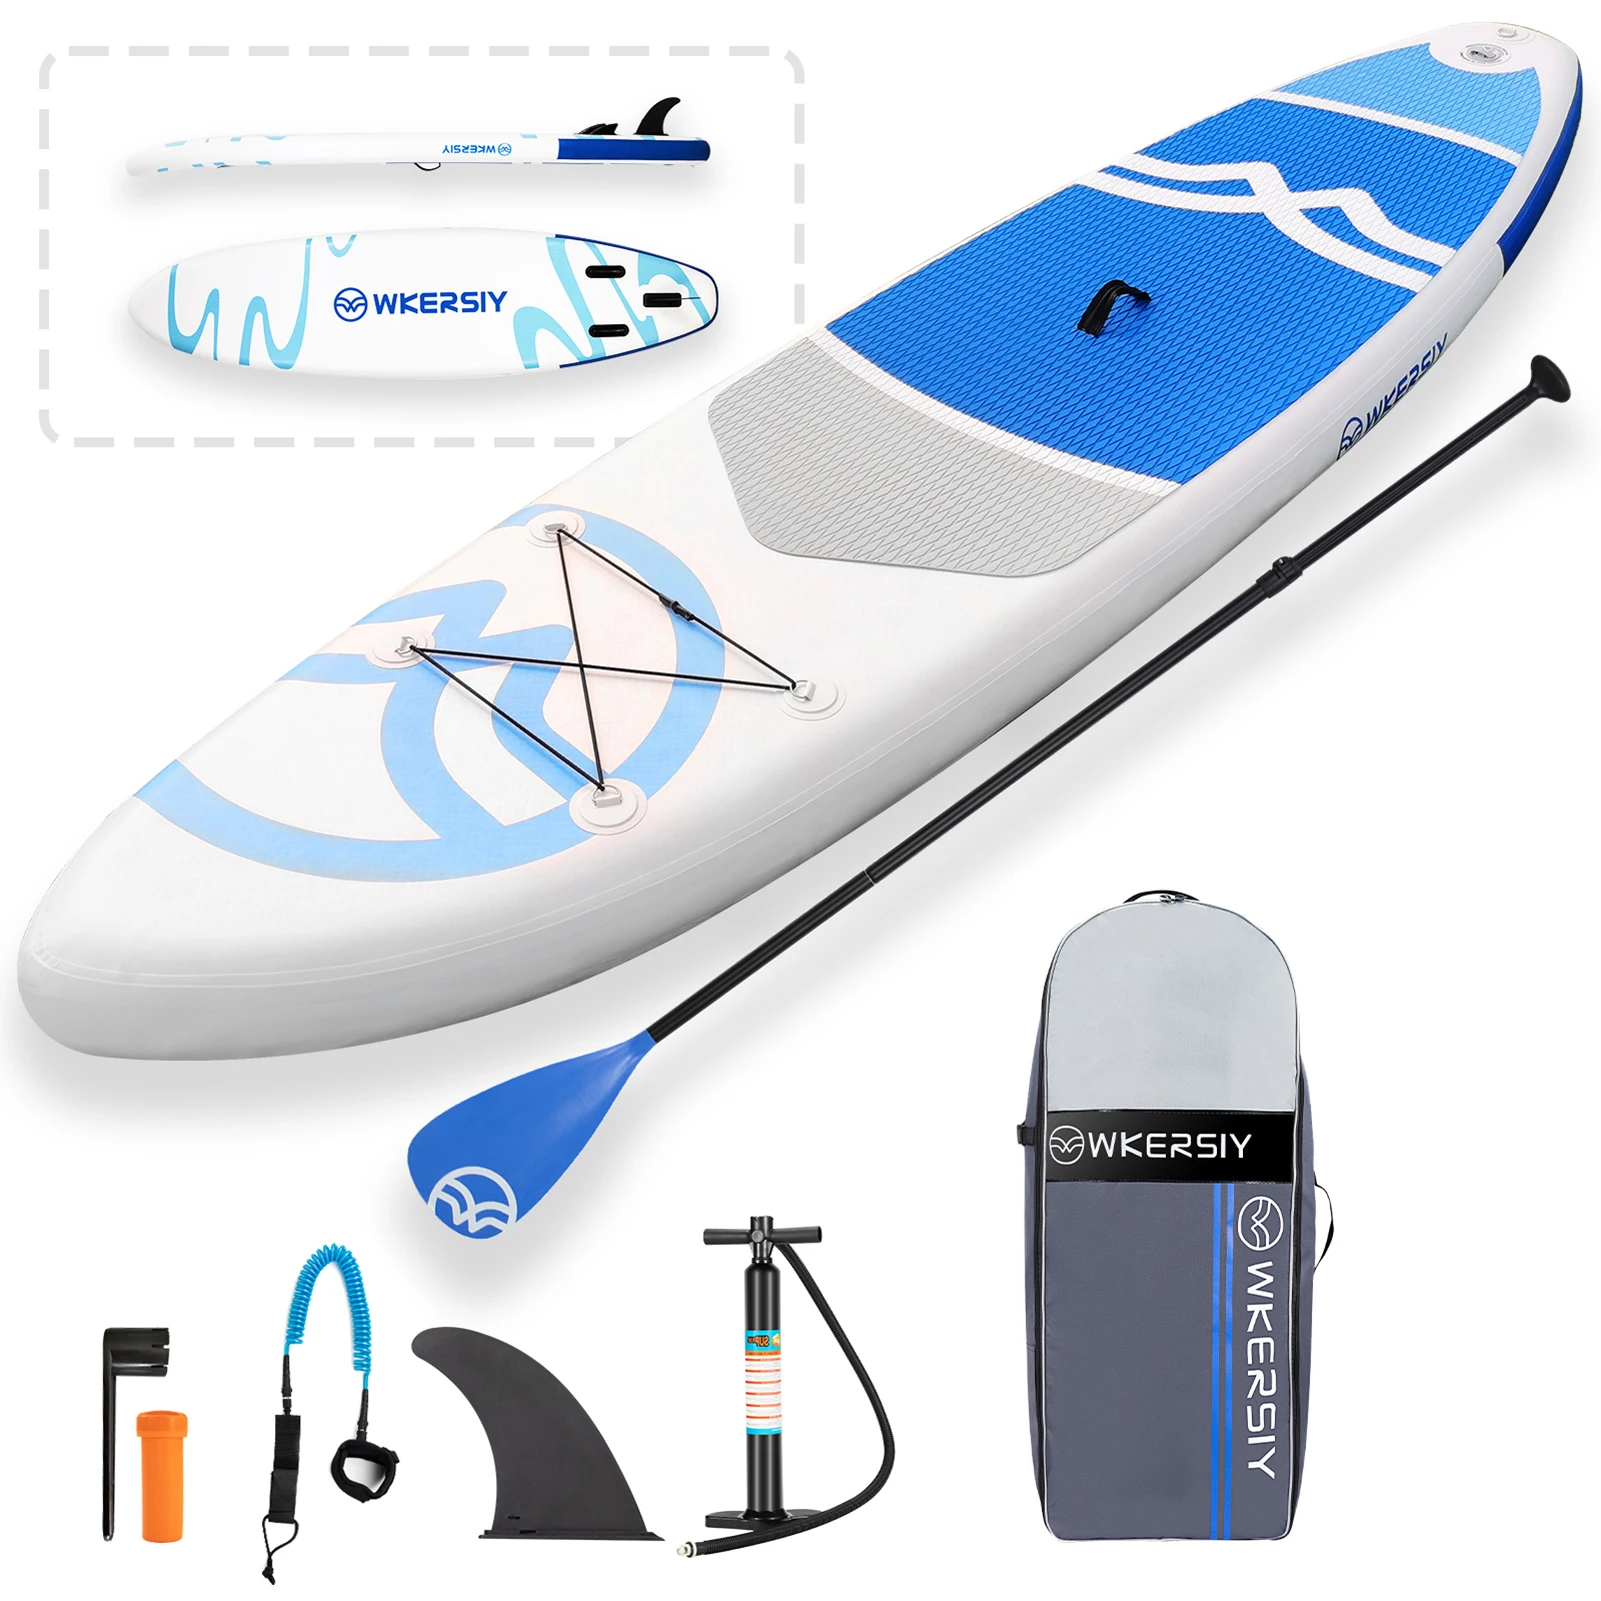 Aufblasbares SUP (Stand Up Paddle Board) Surf Board mit Luftpumpe, Tragetasche, Flosse, Paddel, Zubehör komplett 2